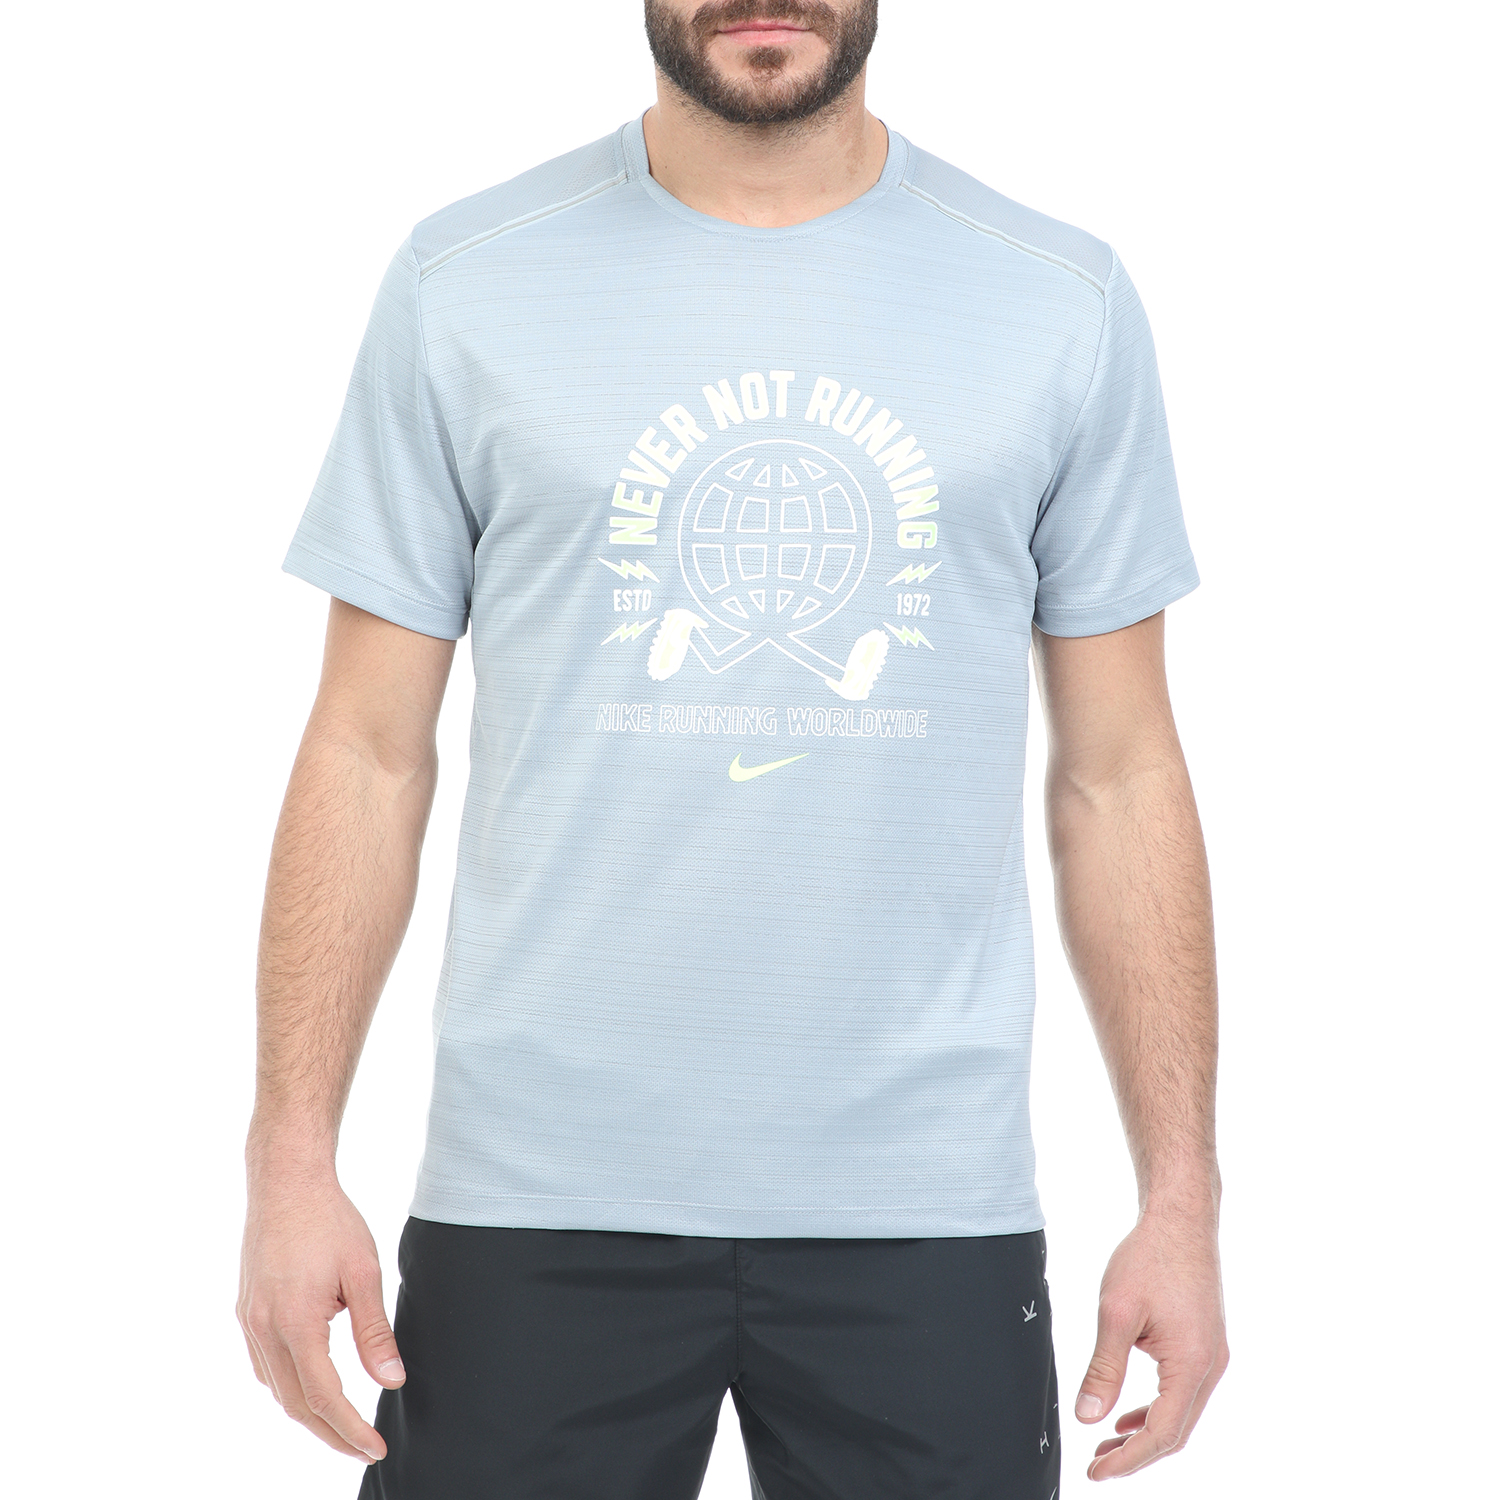 Ανδρικά/Ρούχα/Αθλητικά/T-shirt NIKE - Ανδρική μπλούζα NIKE MILER SS WILD RUN GX PO μπλε